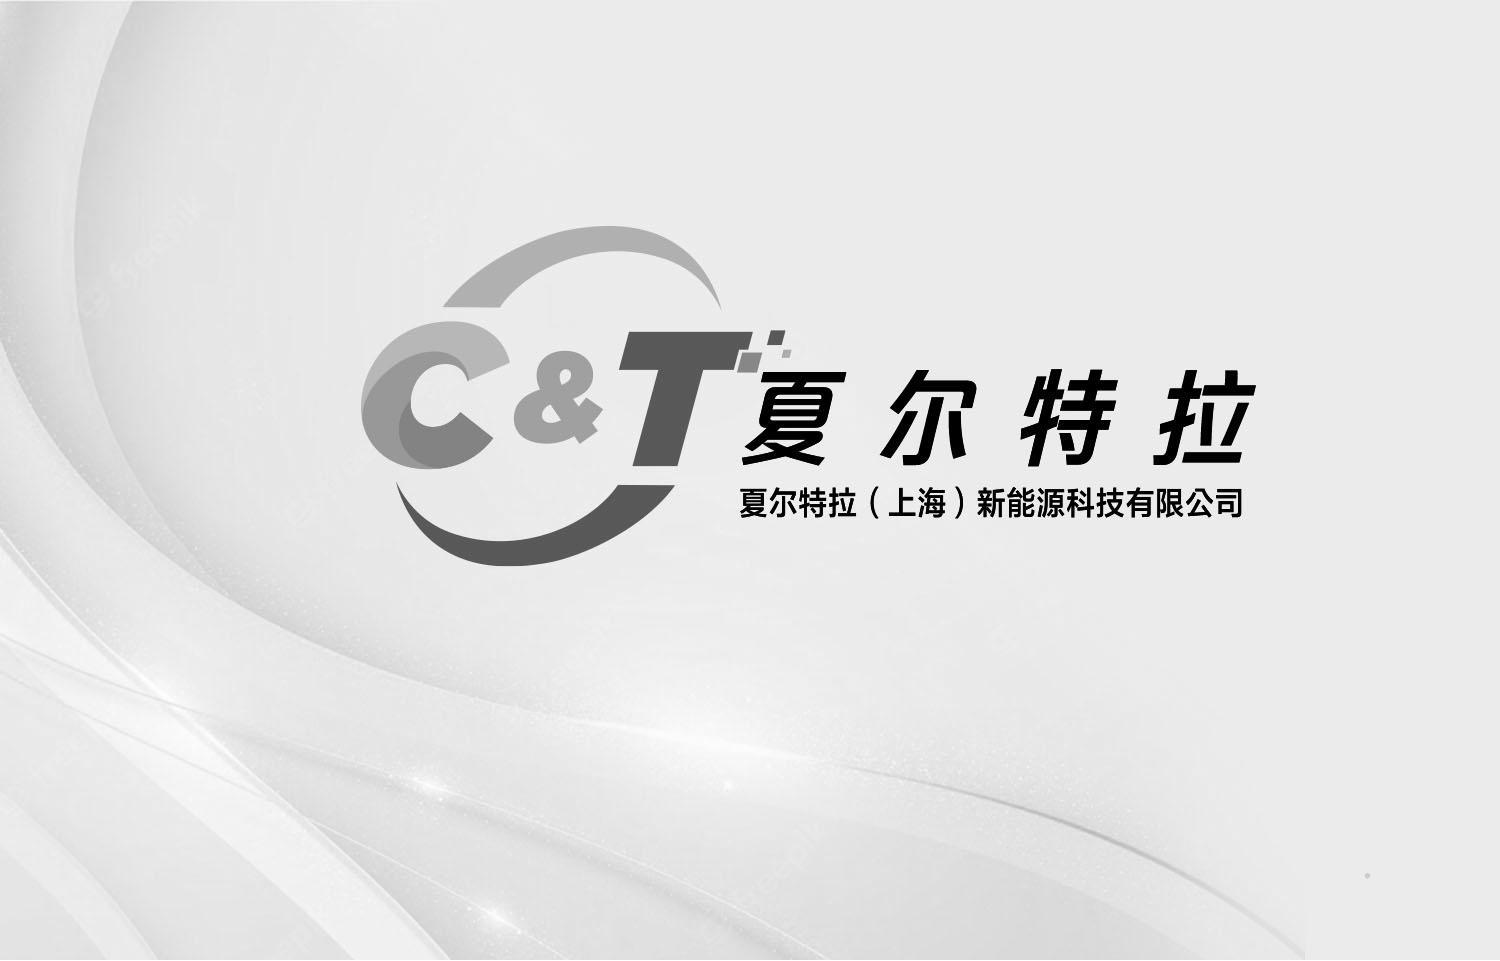 C&T 夏尔特拉 夏尔特拉（上海）新能源科技有限公司logo